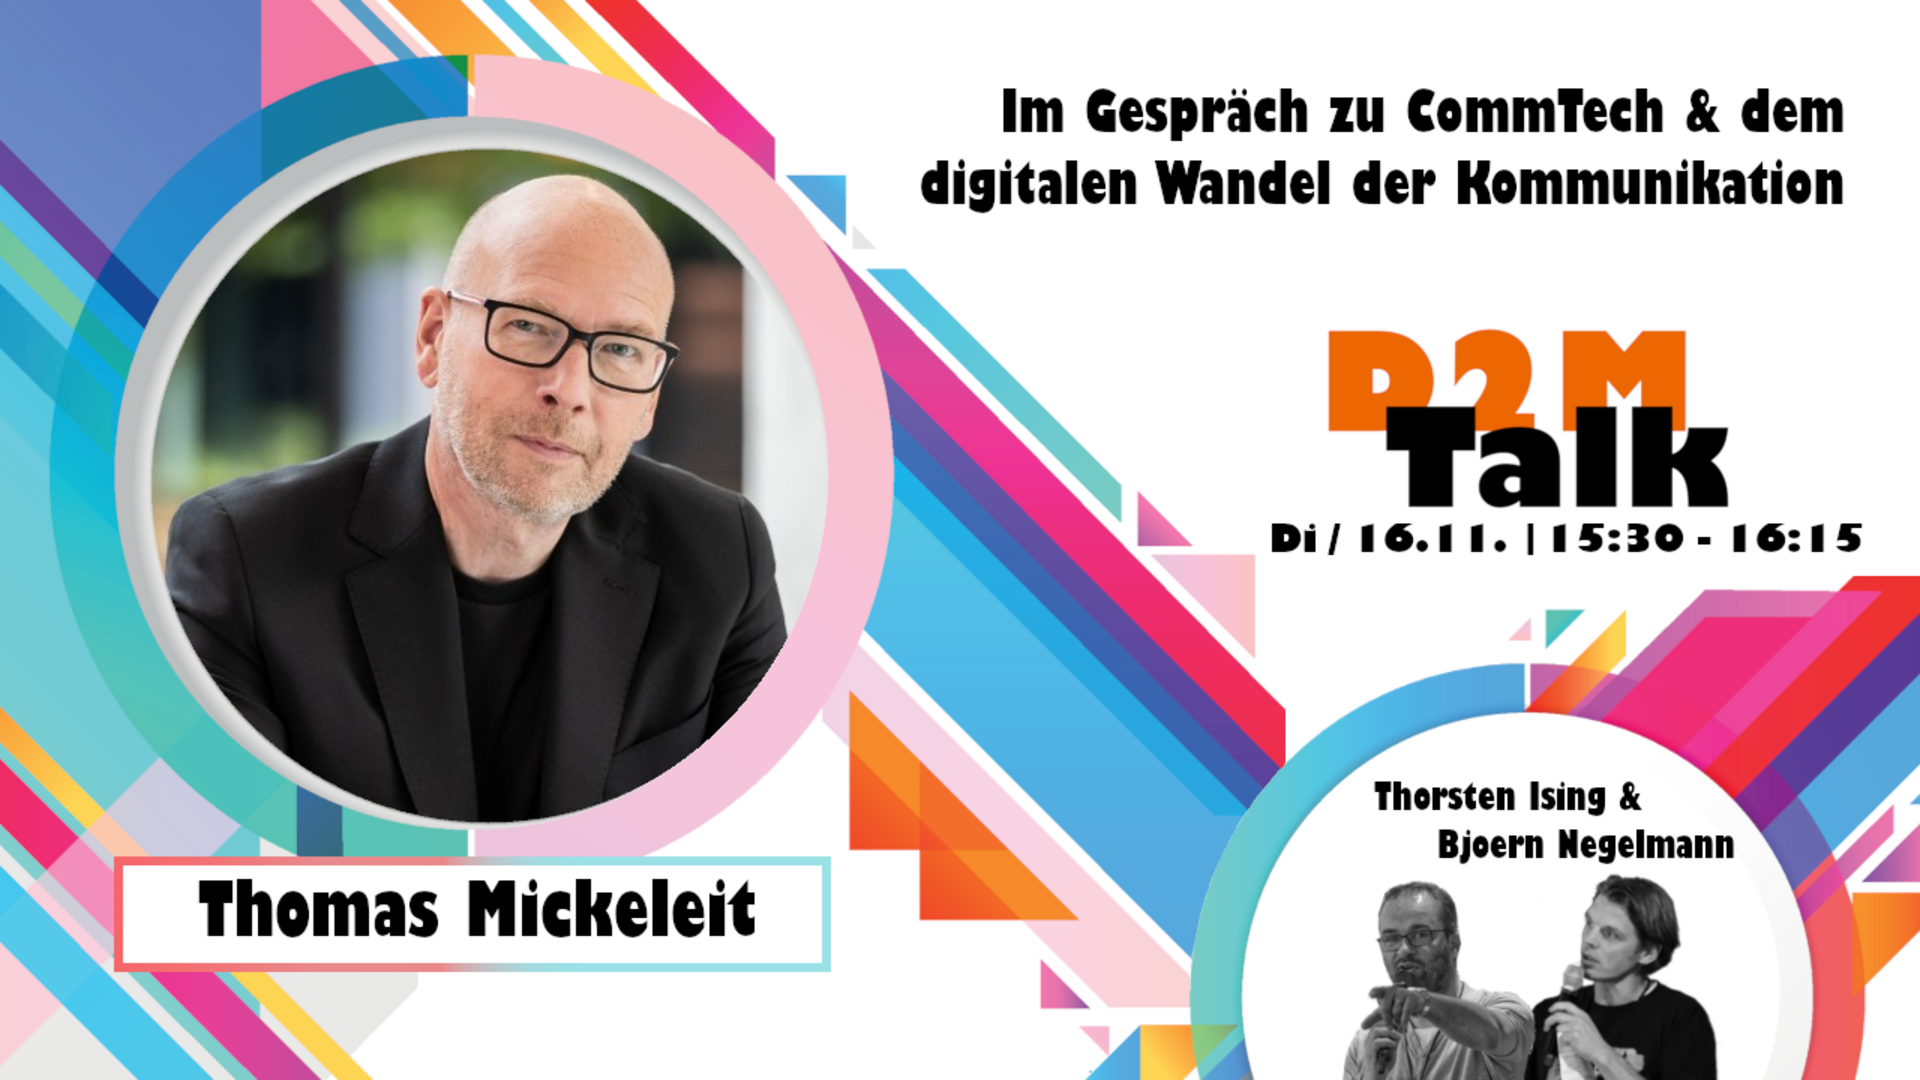 Im Gespräch mit Thomas Mickeleit zu CommTech und wie Kommunikation den digitalen Wandel schafft